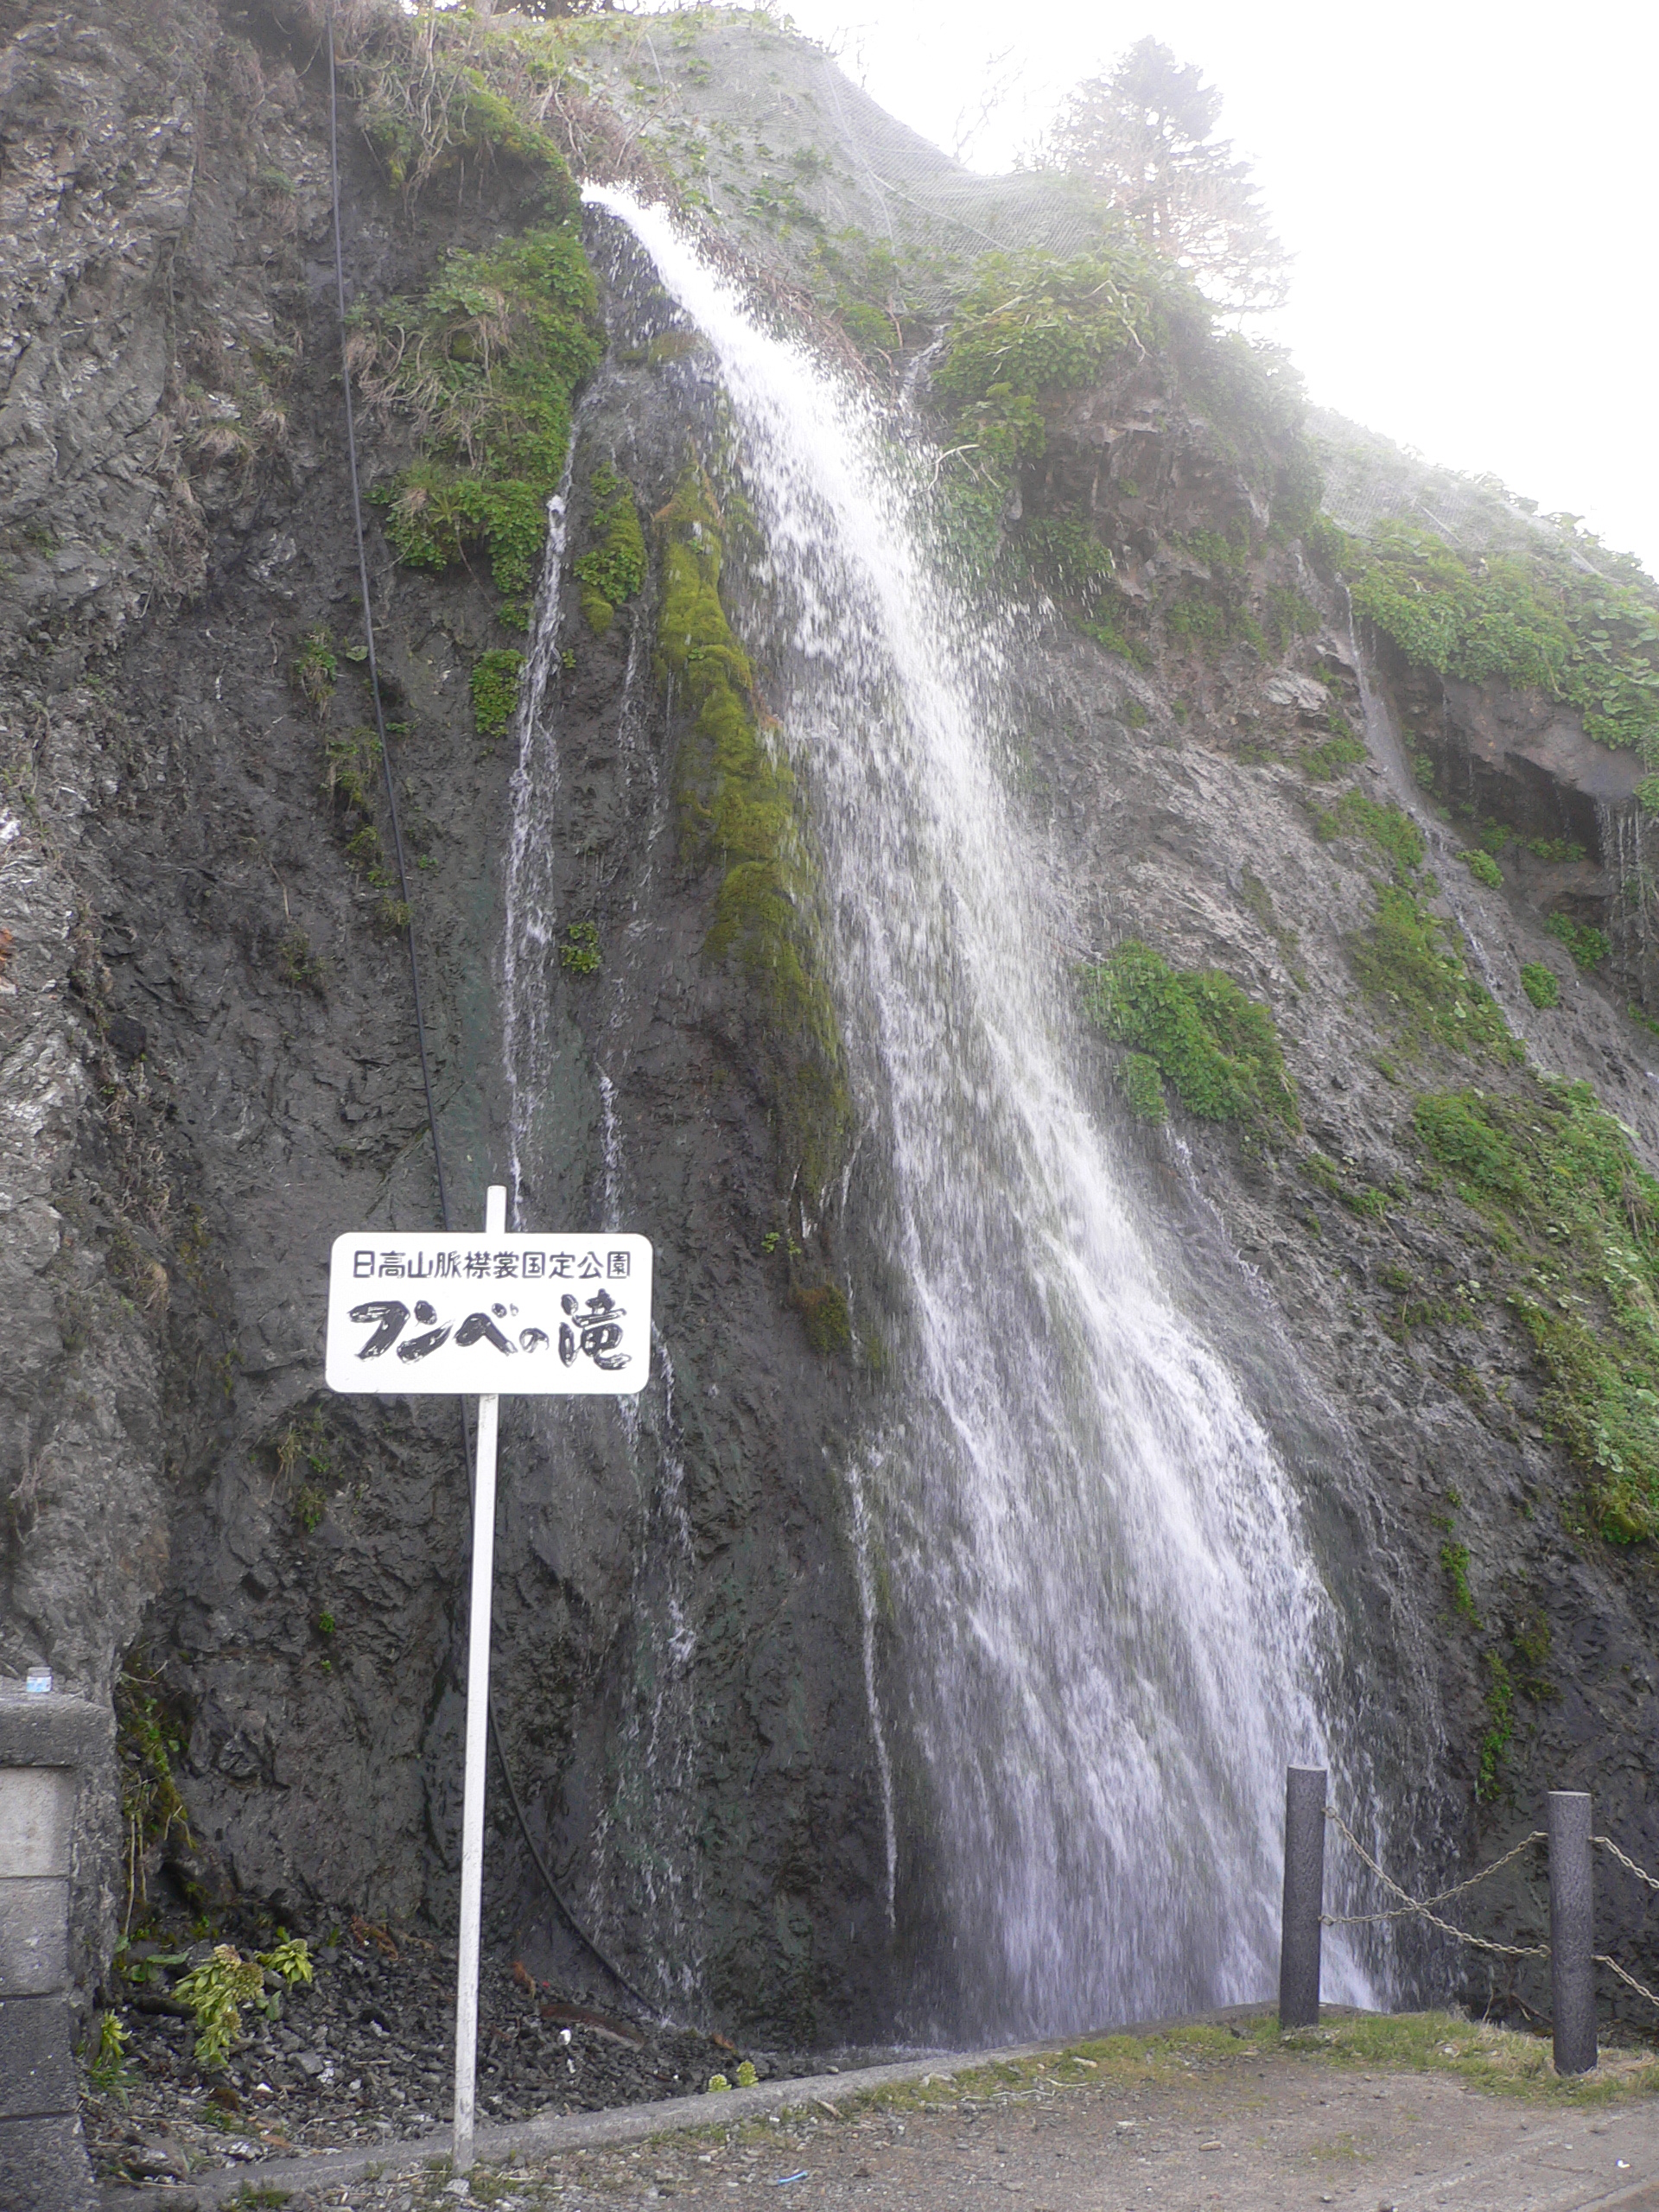 フンベの滝